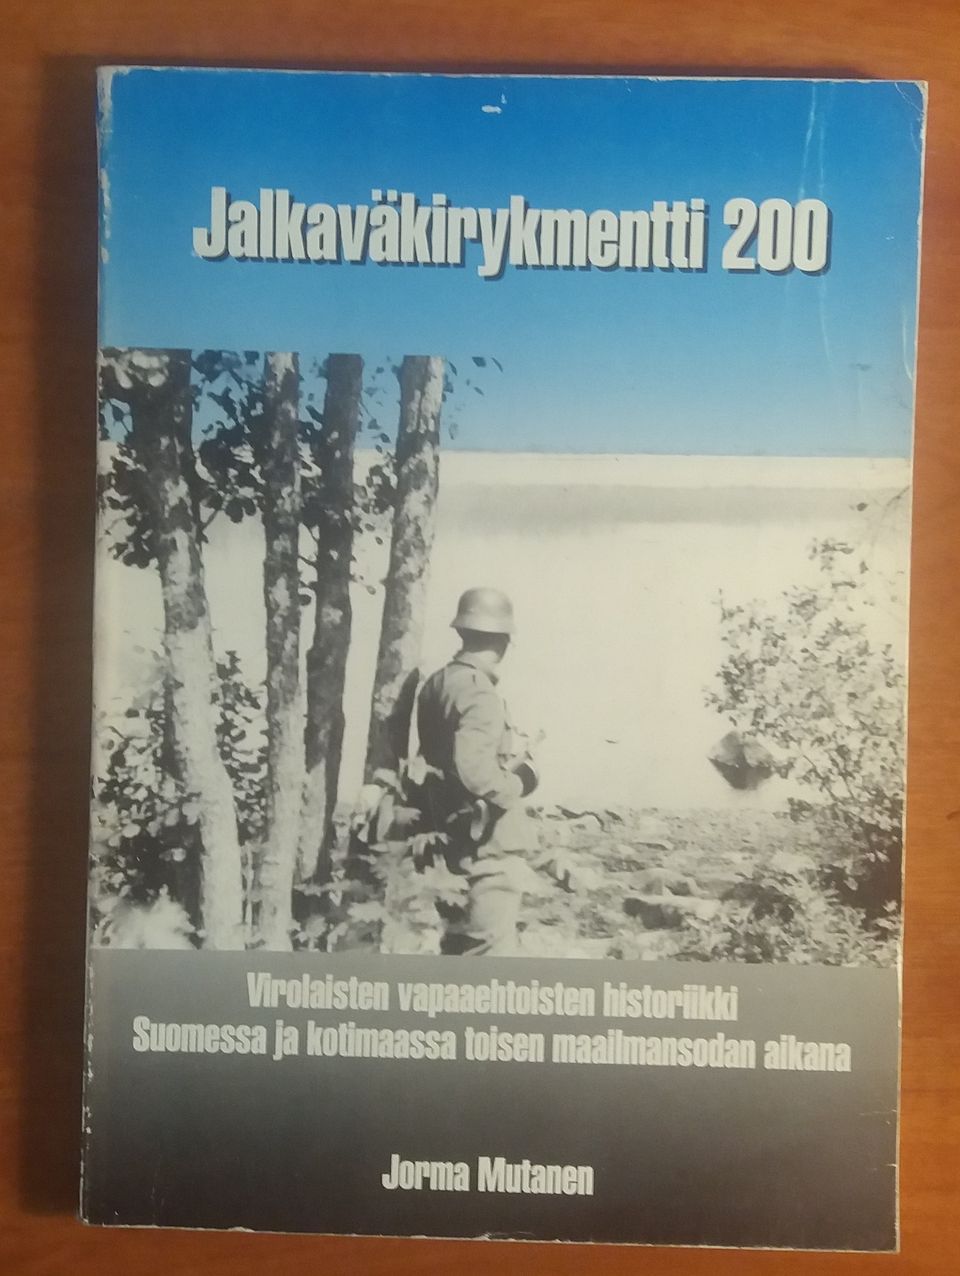 Mutanen Jorma JALKAVÄKIRYKMENTTI 200 Lions Club Luumäki 1991